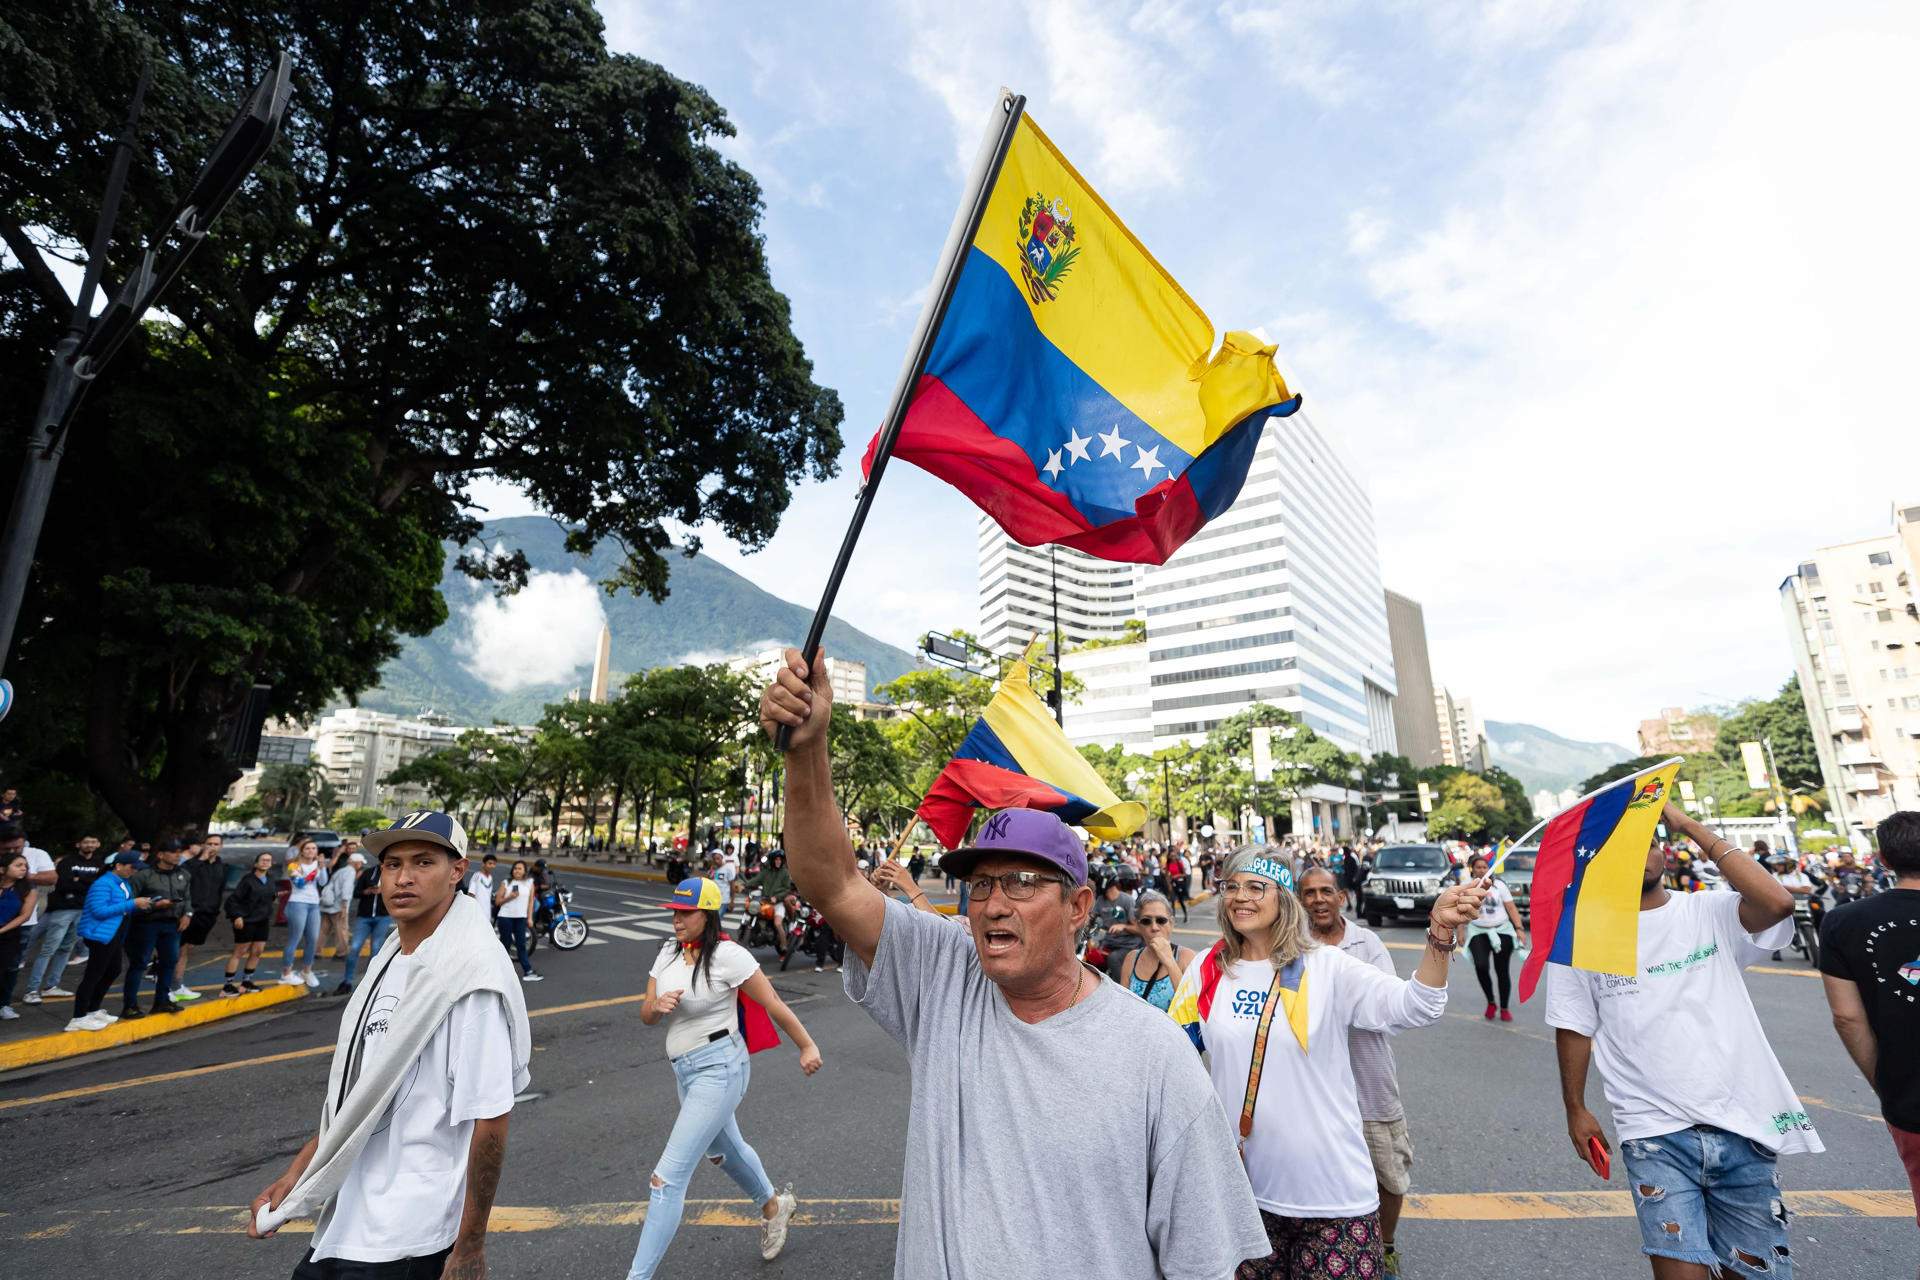 Las protestas por un posible fraude electoral se extienden por Venezuela y aumenta la presión internacional